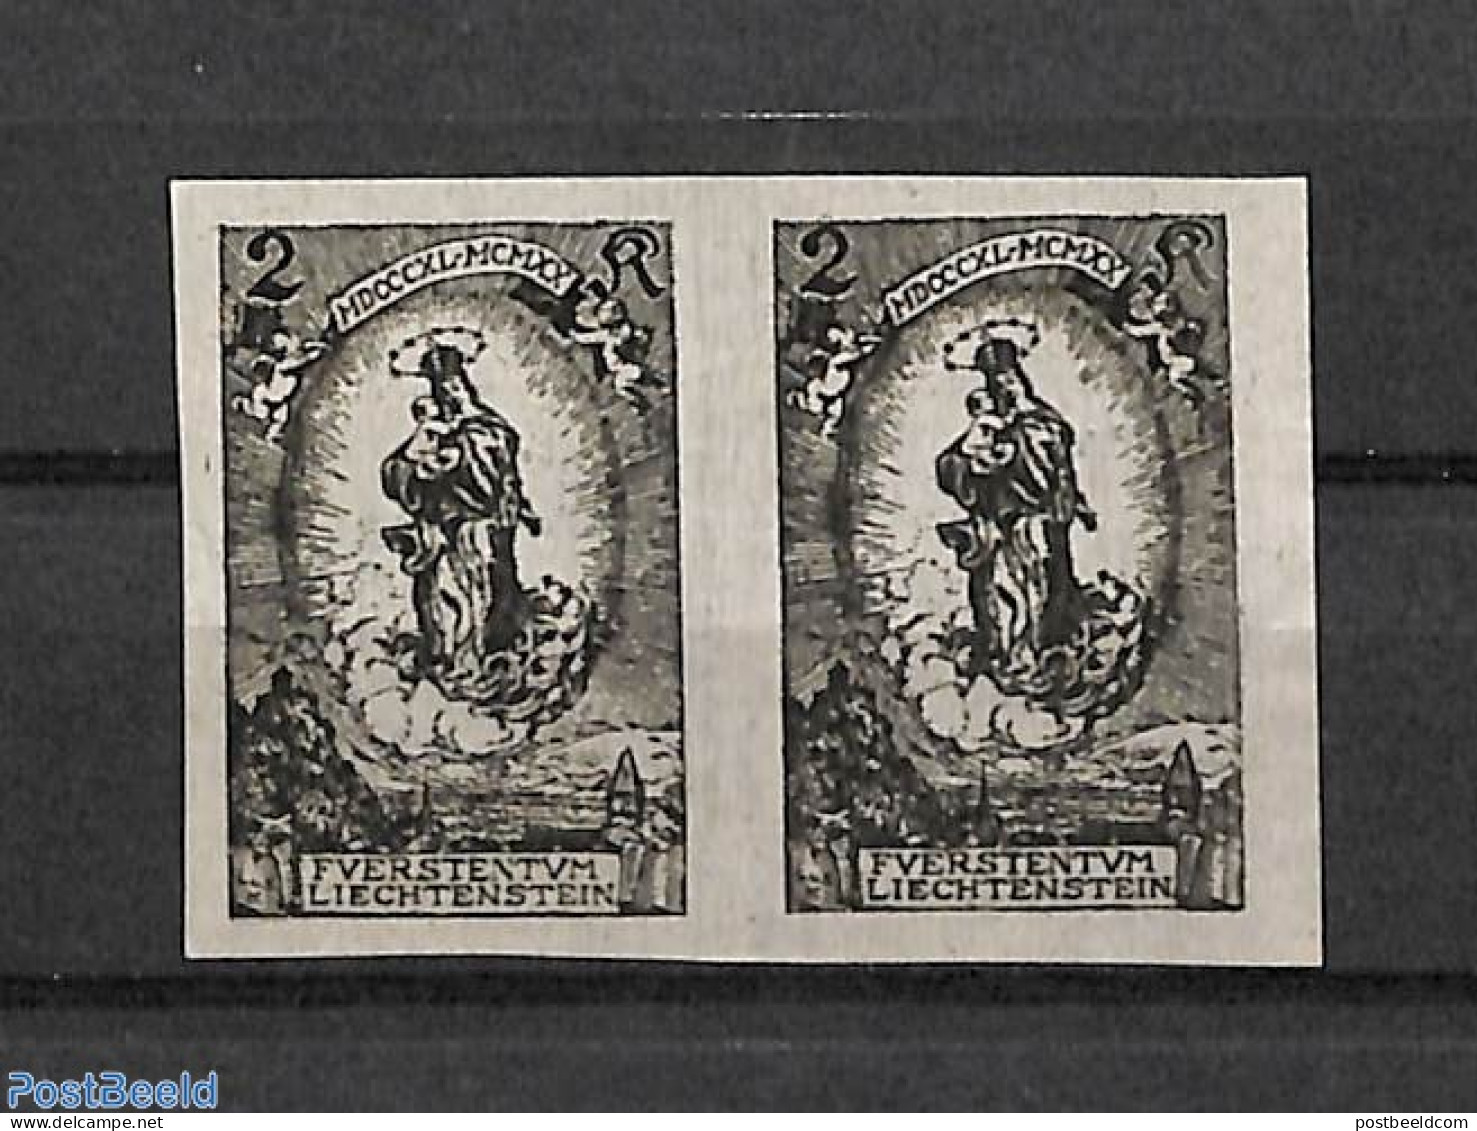 Liechtenstein 1920 Johann II 80th Anniv, Blackprint Pair, Signed, Mint NH, History - Kings & Queens (Royalty) - Ongebruikt